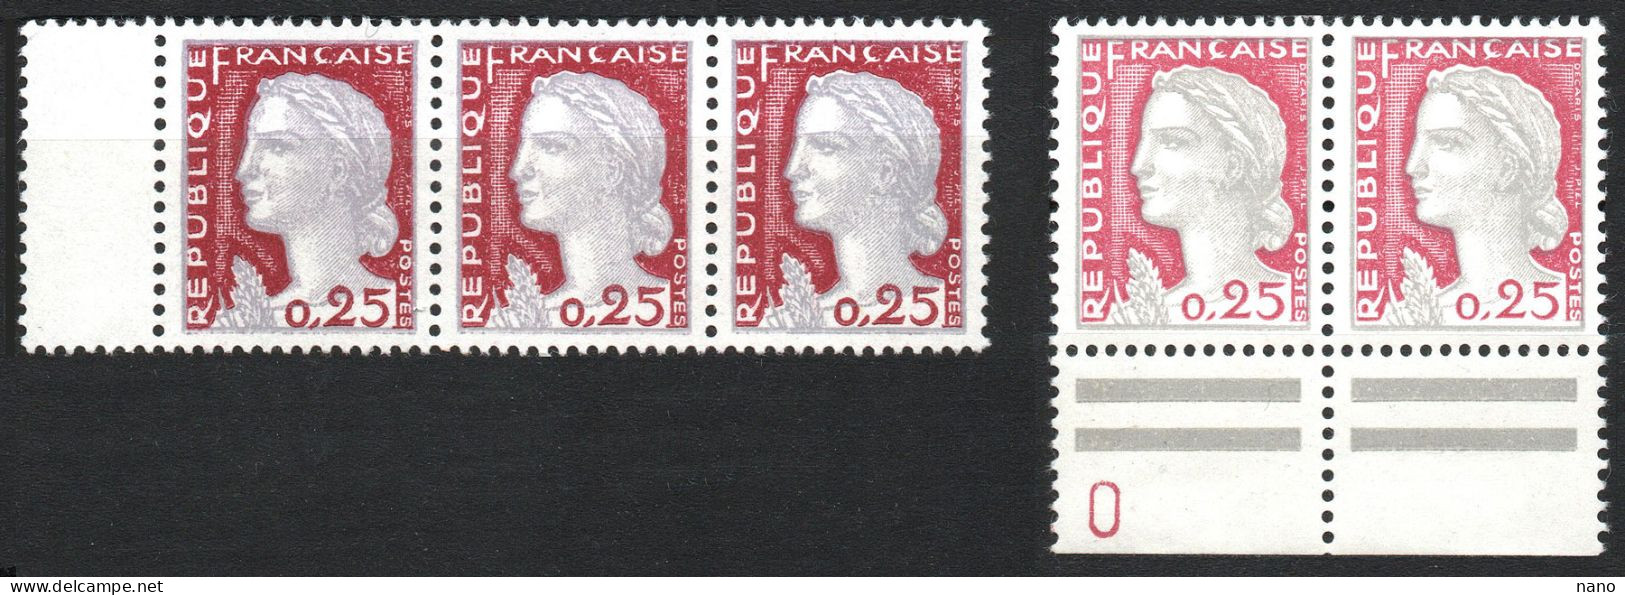 Y&T N° 1263 Et 1263c - 25 C. - Marianne De Decaris - Année 1960 - Bloc De 3 Ex Et Une Paire - Neuf ** - 1960 Marianne (Decaris)